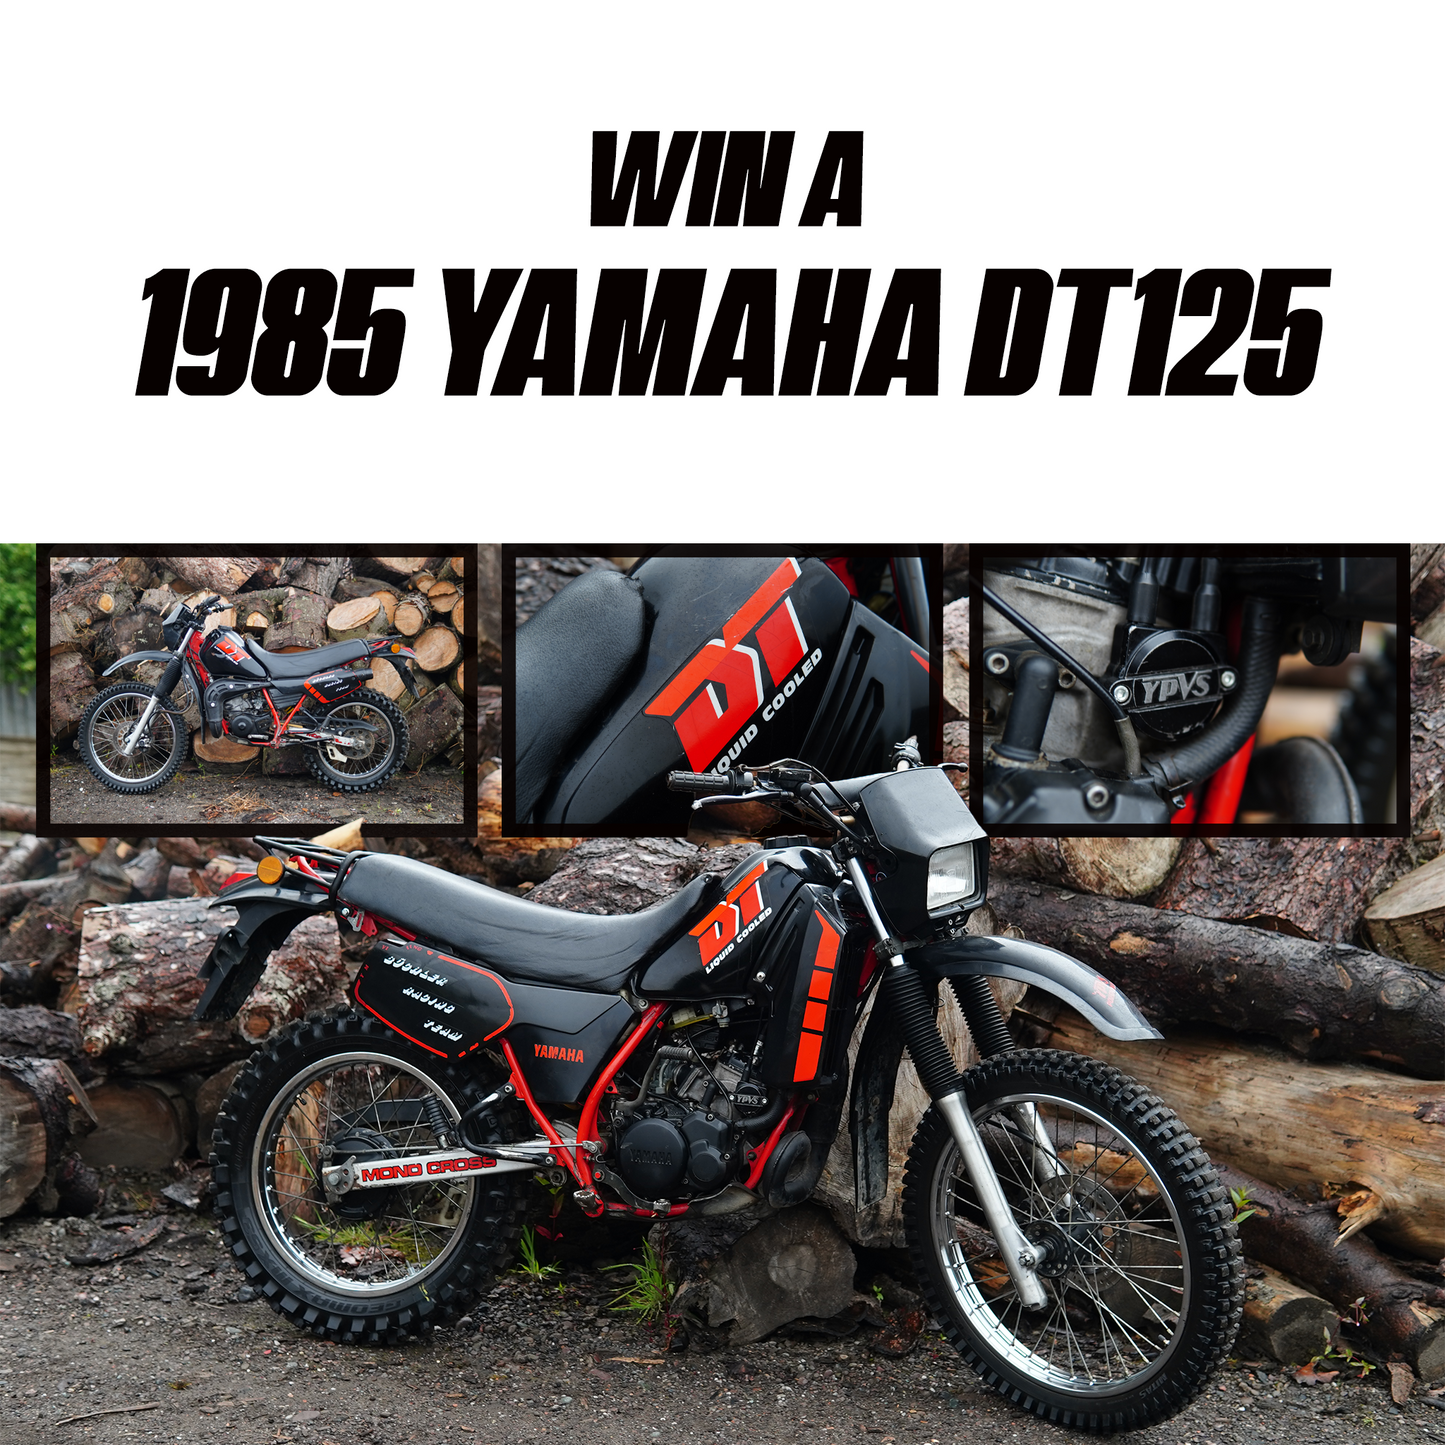 00 1985 Yamaha DT125R